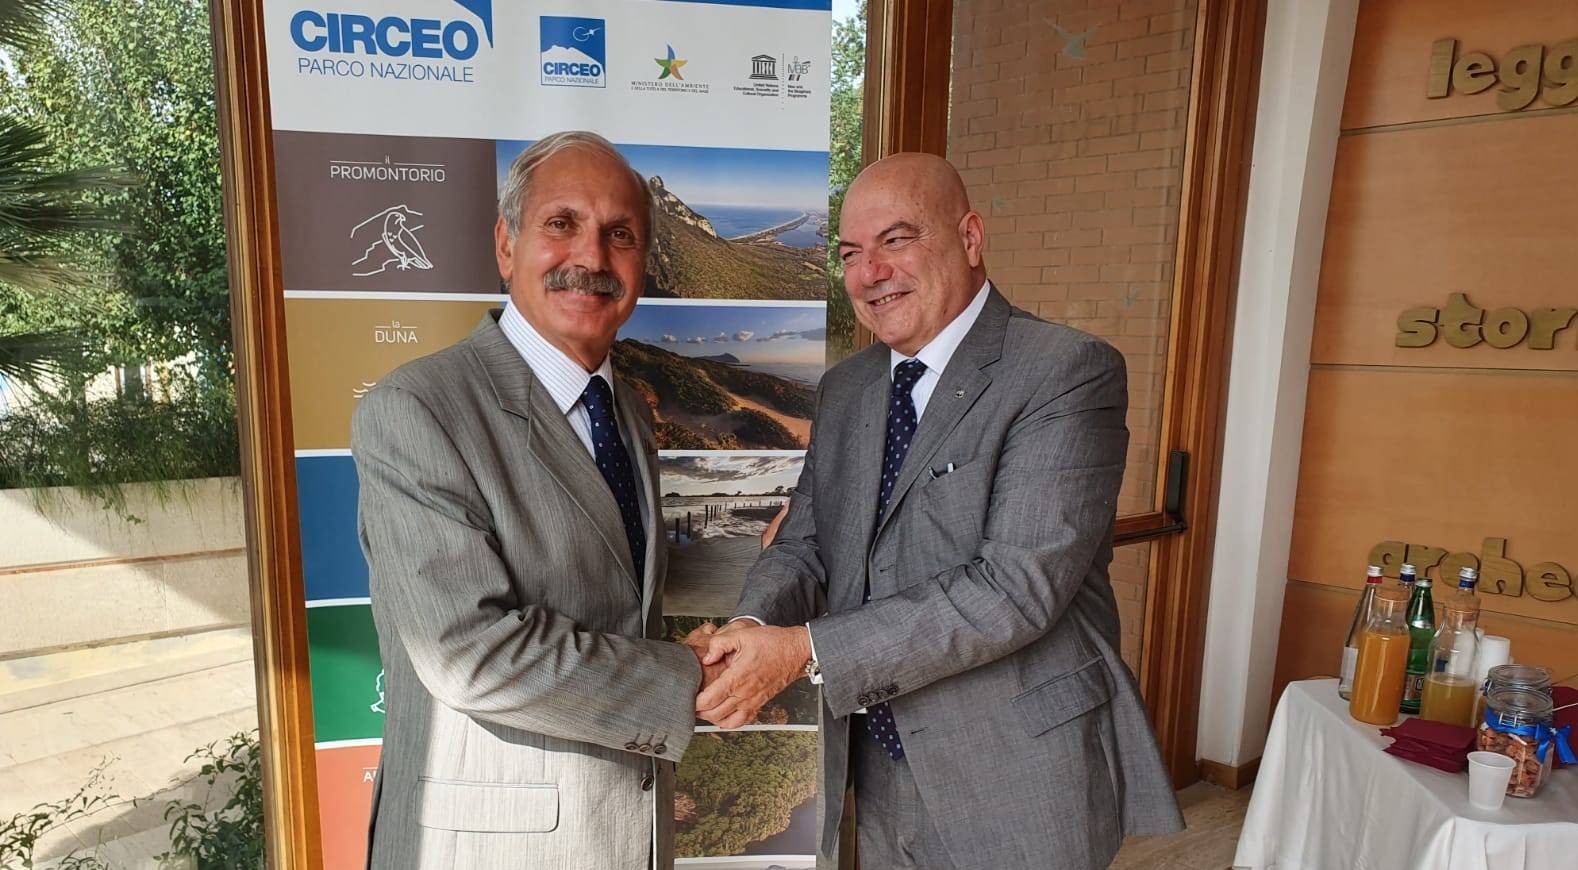 Un generale alla guida del Parco Nazionale del Circeo, si insedia Antonio Ricciardi: “Il Parco siamo noi”